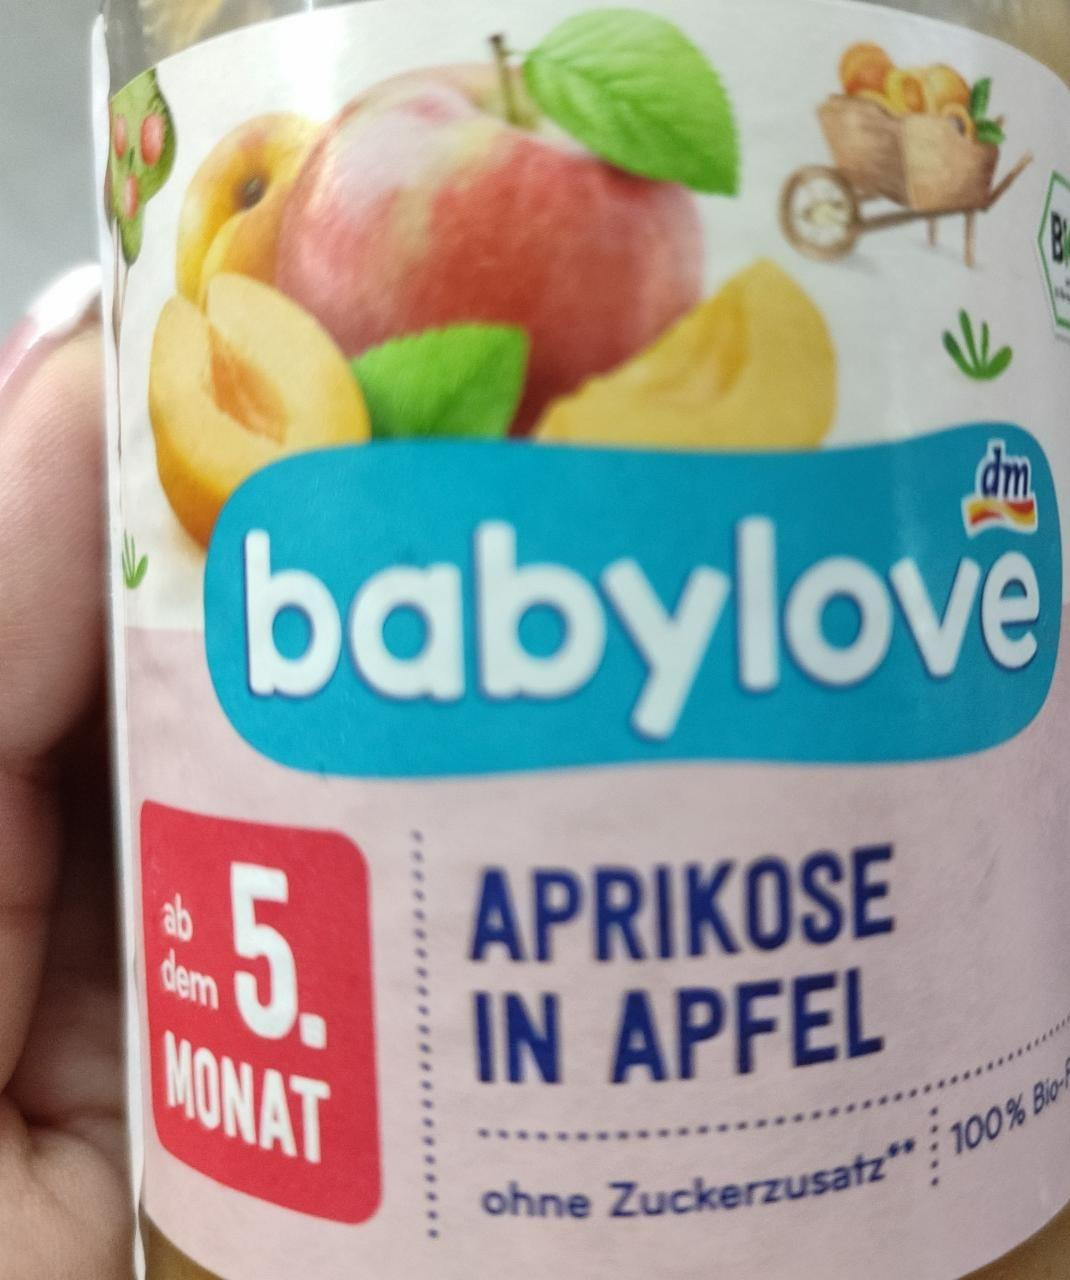 Fotografie - Aprikose in Apfel Babylove Dm